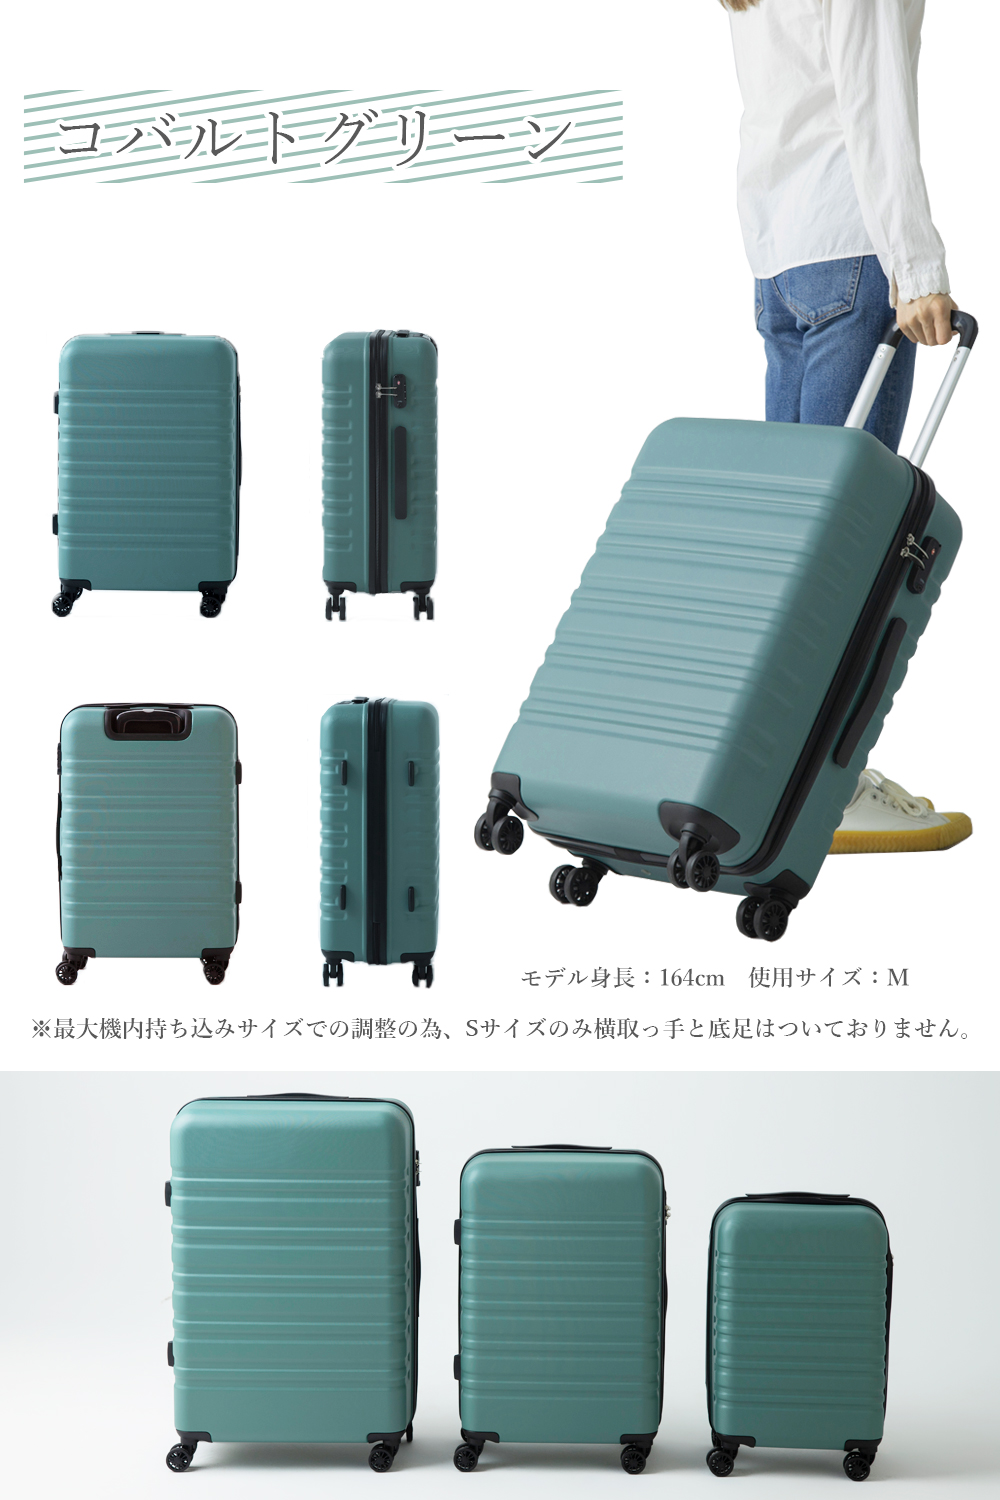 スーツケース l 送料無料 ty8098-l キャリーバッグ キャリーケース lサイズ 大型 ハード...